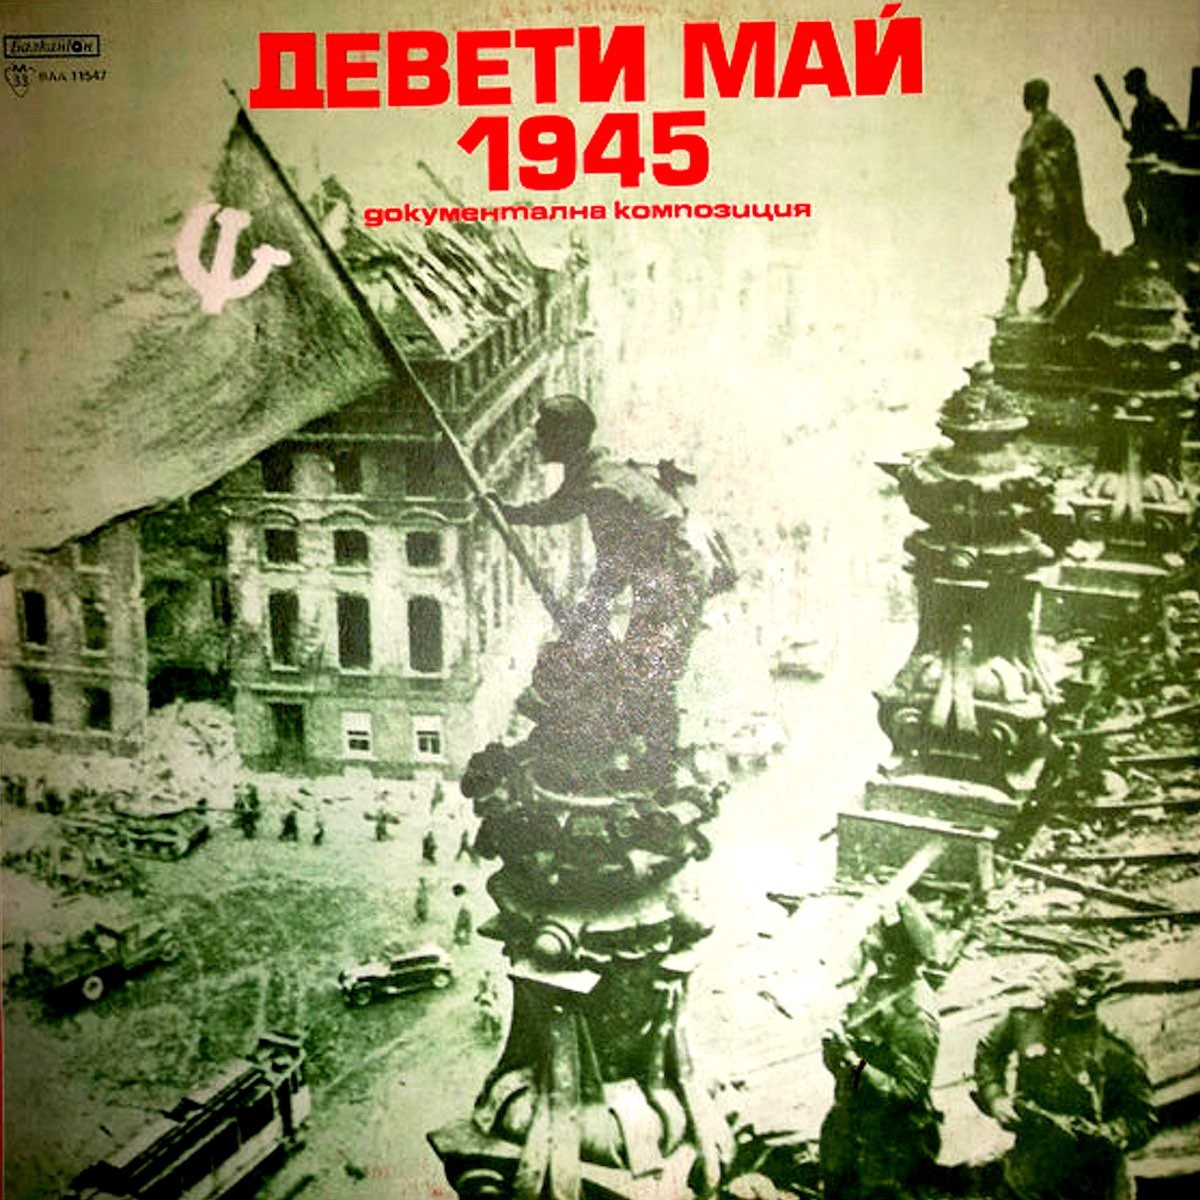 Девети май 1945, документална композиция за Отечествената война на България 1944-1945 година